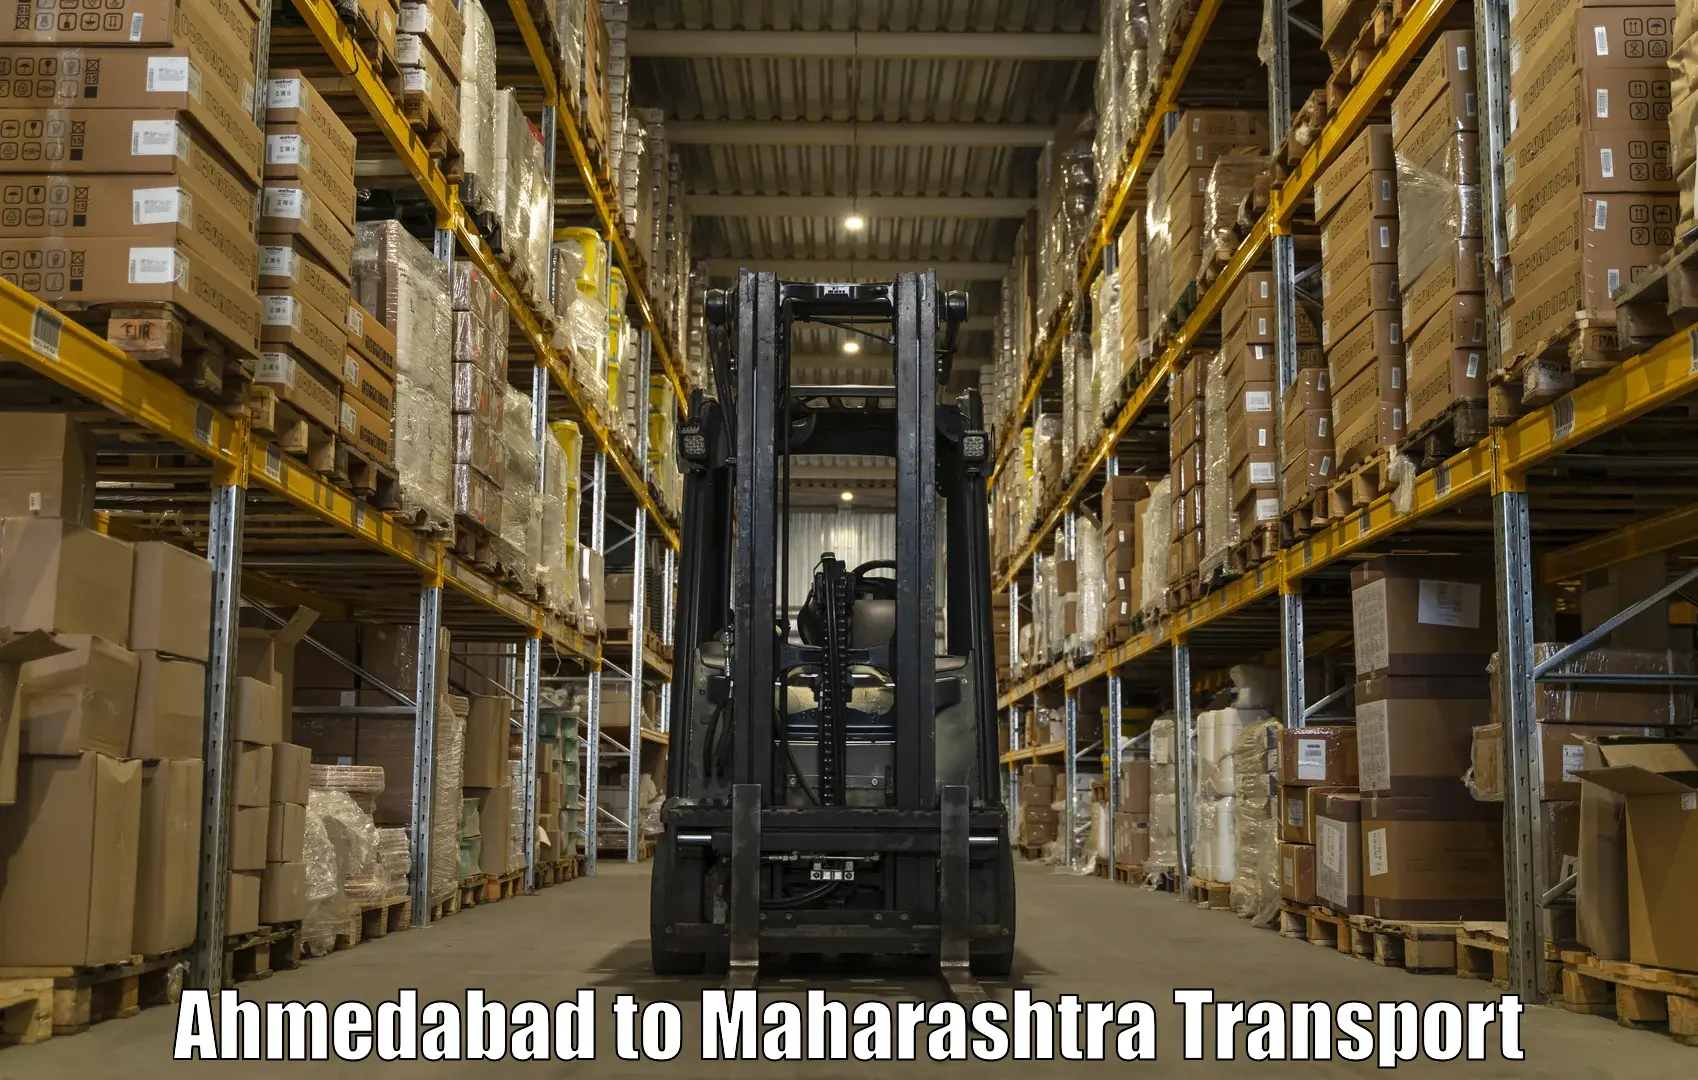 India truck logistics services Ahmedabad to Tata Institute of Social Sciences Mumbai